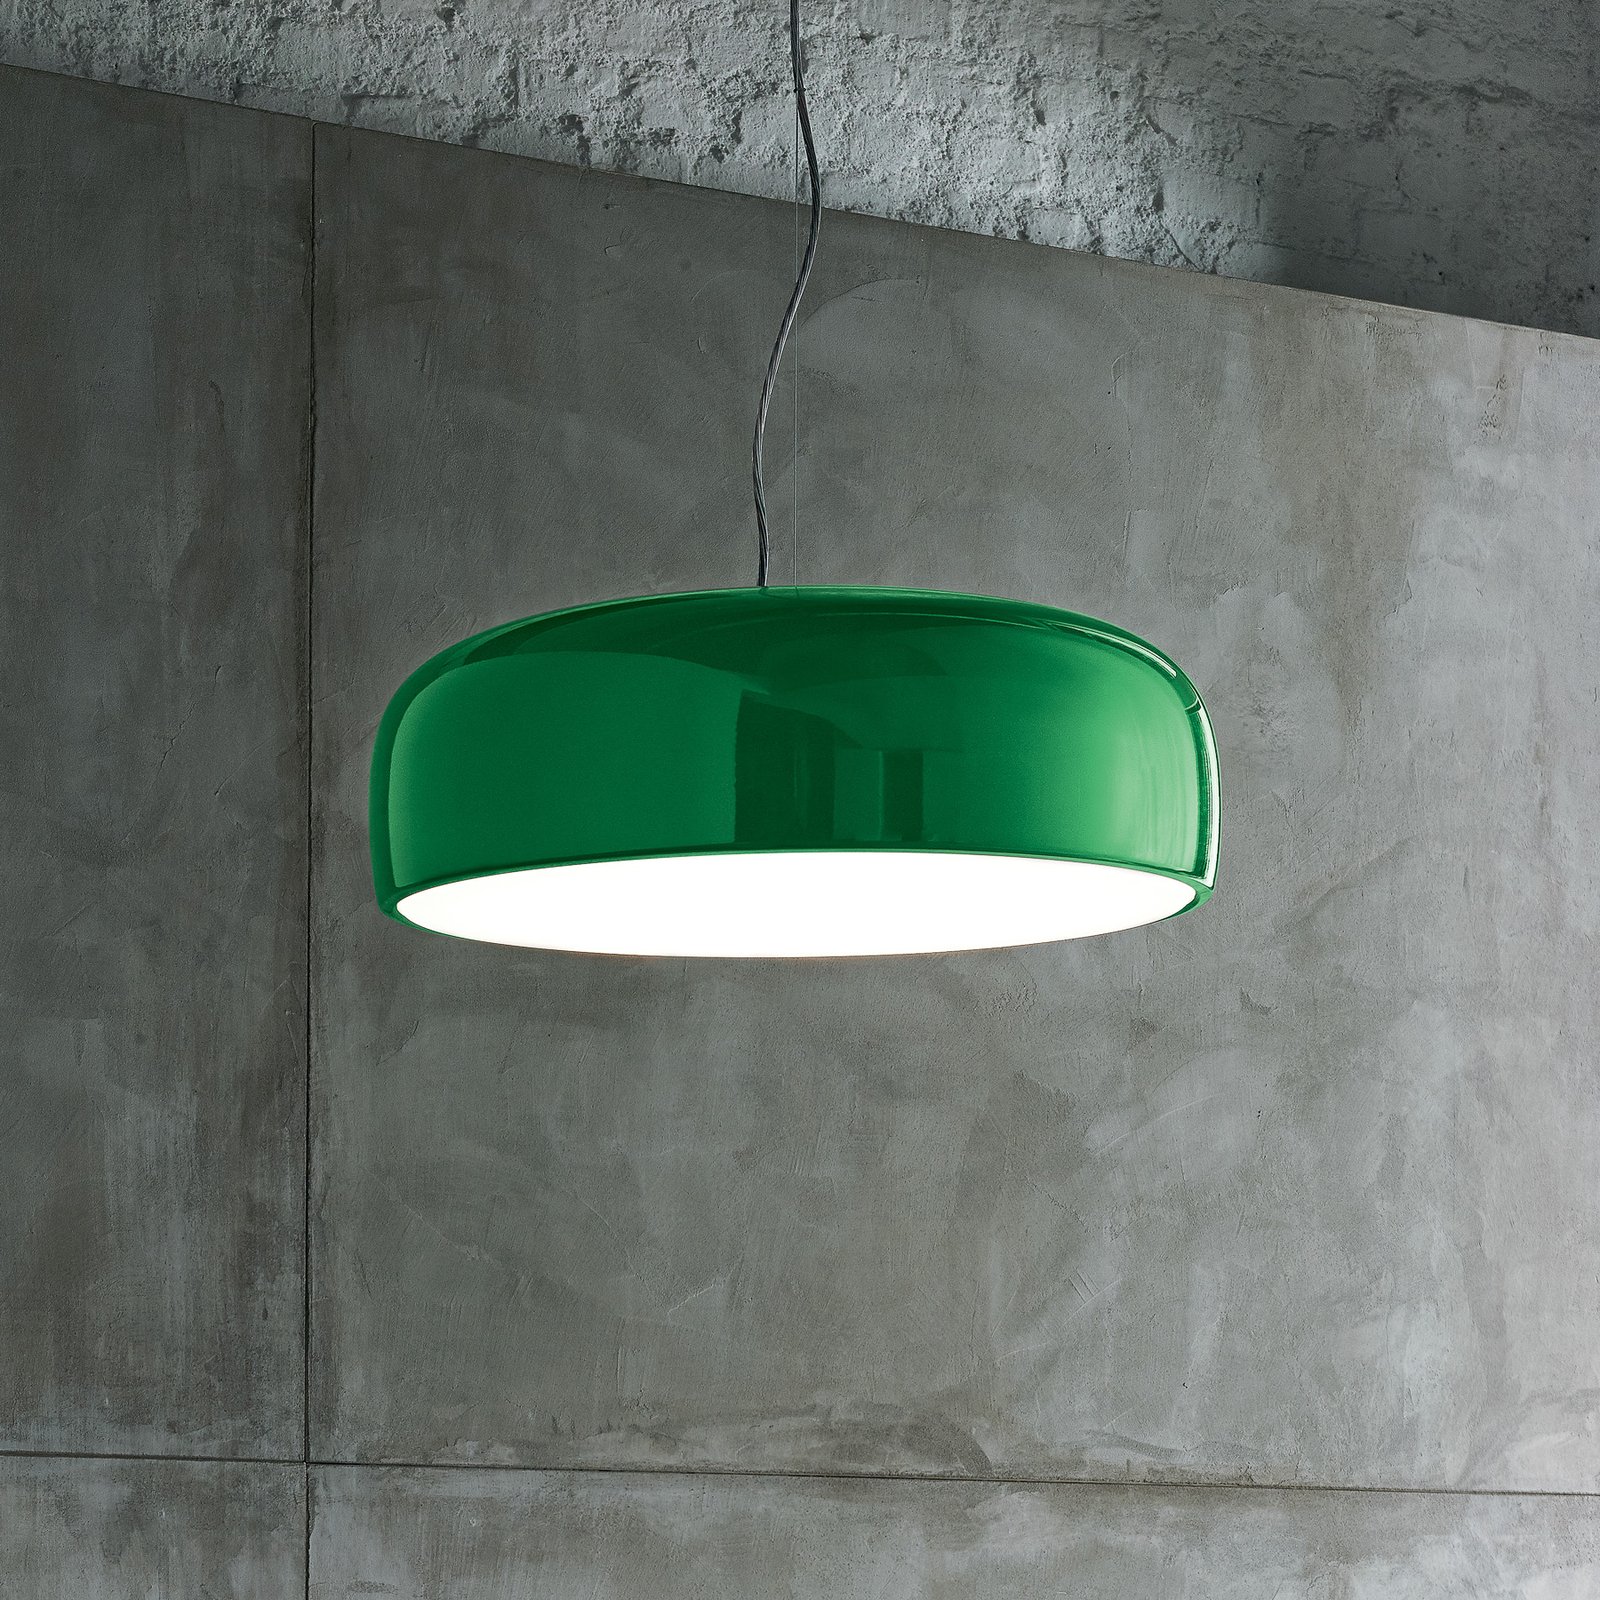 FLOS Smithfield S LED-hængelampe i grøn